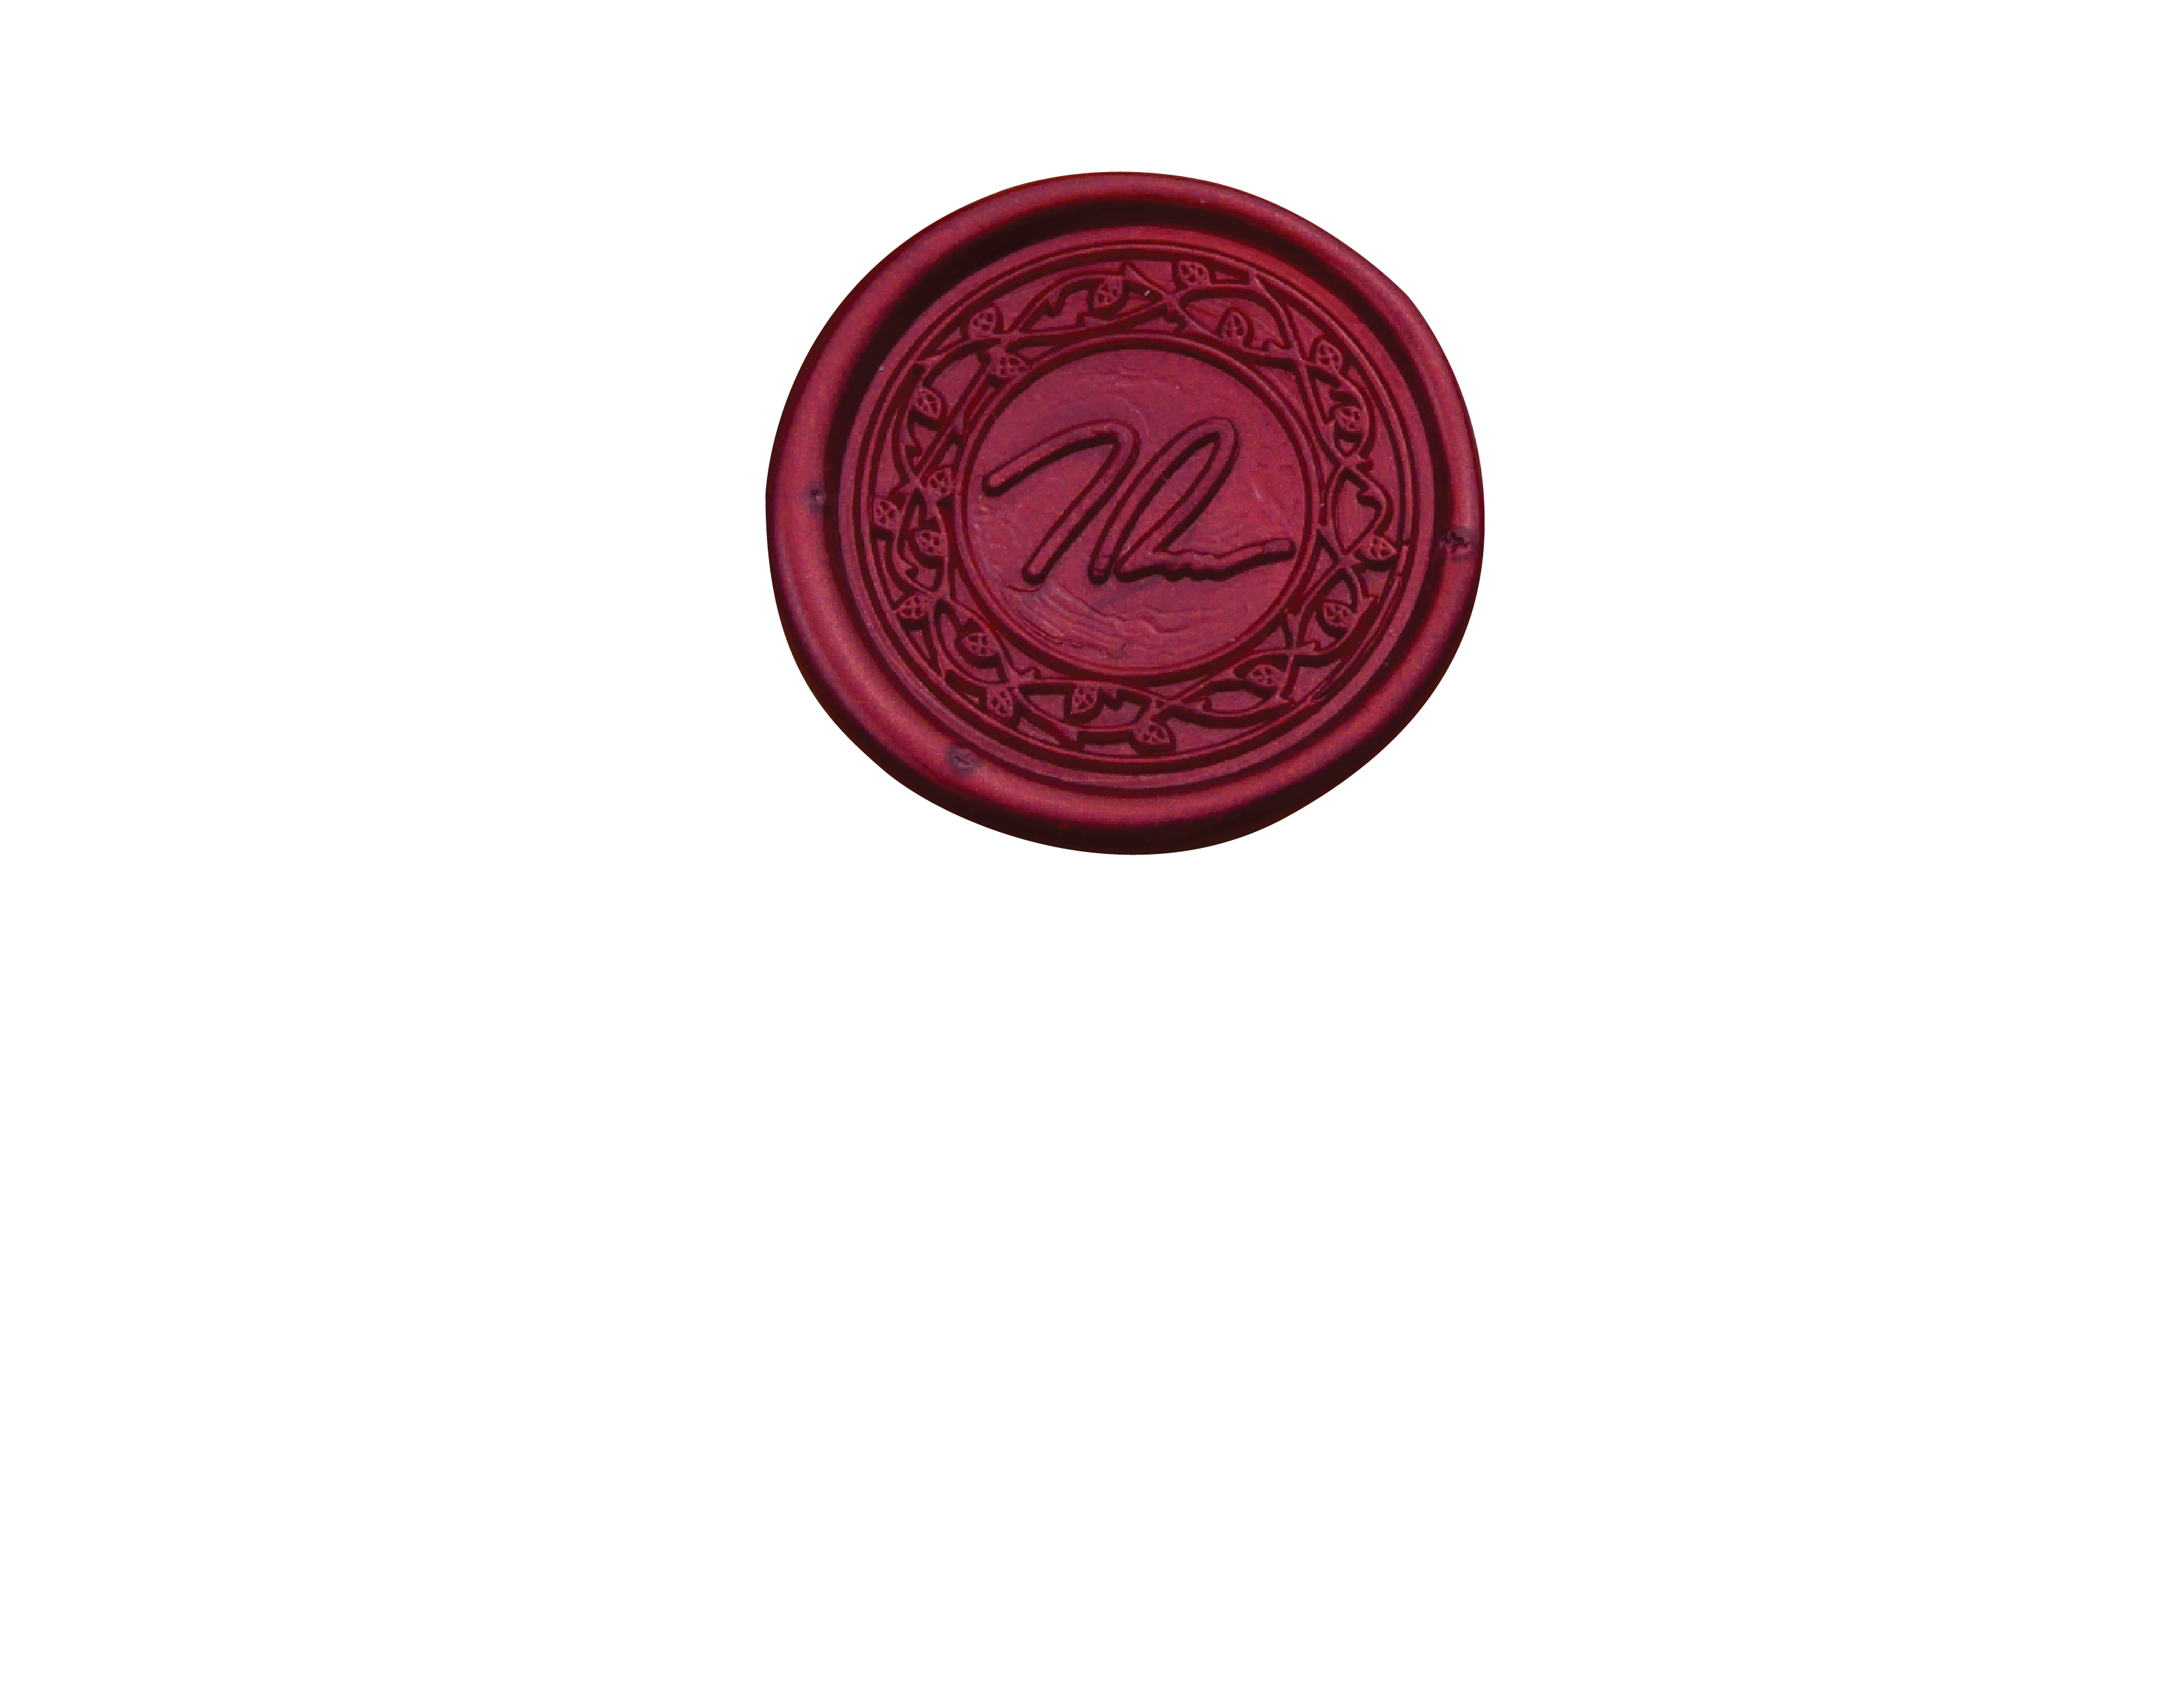 T.W. Price Design